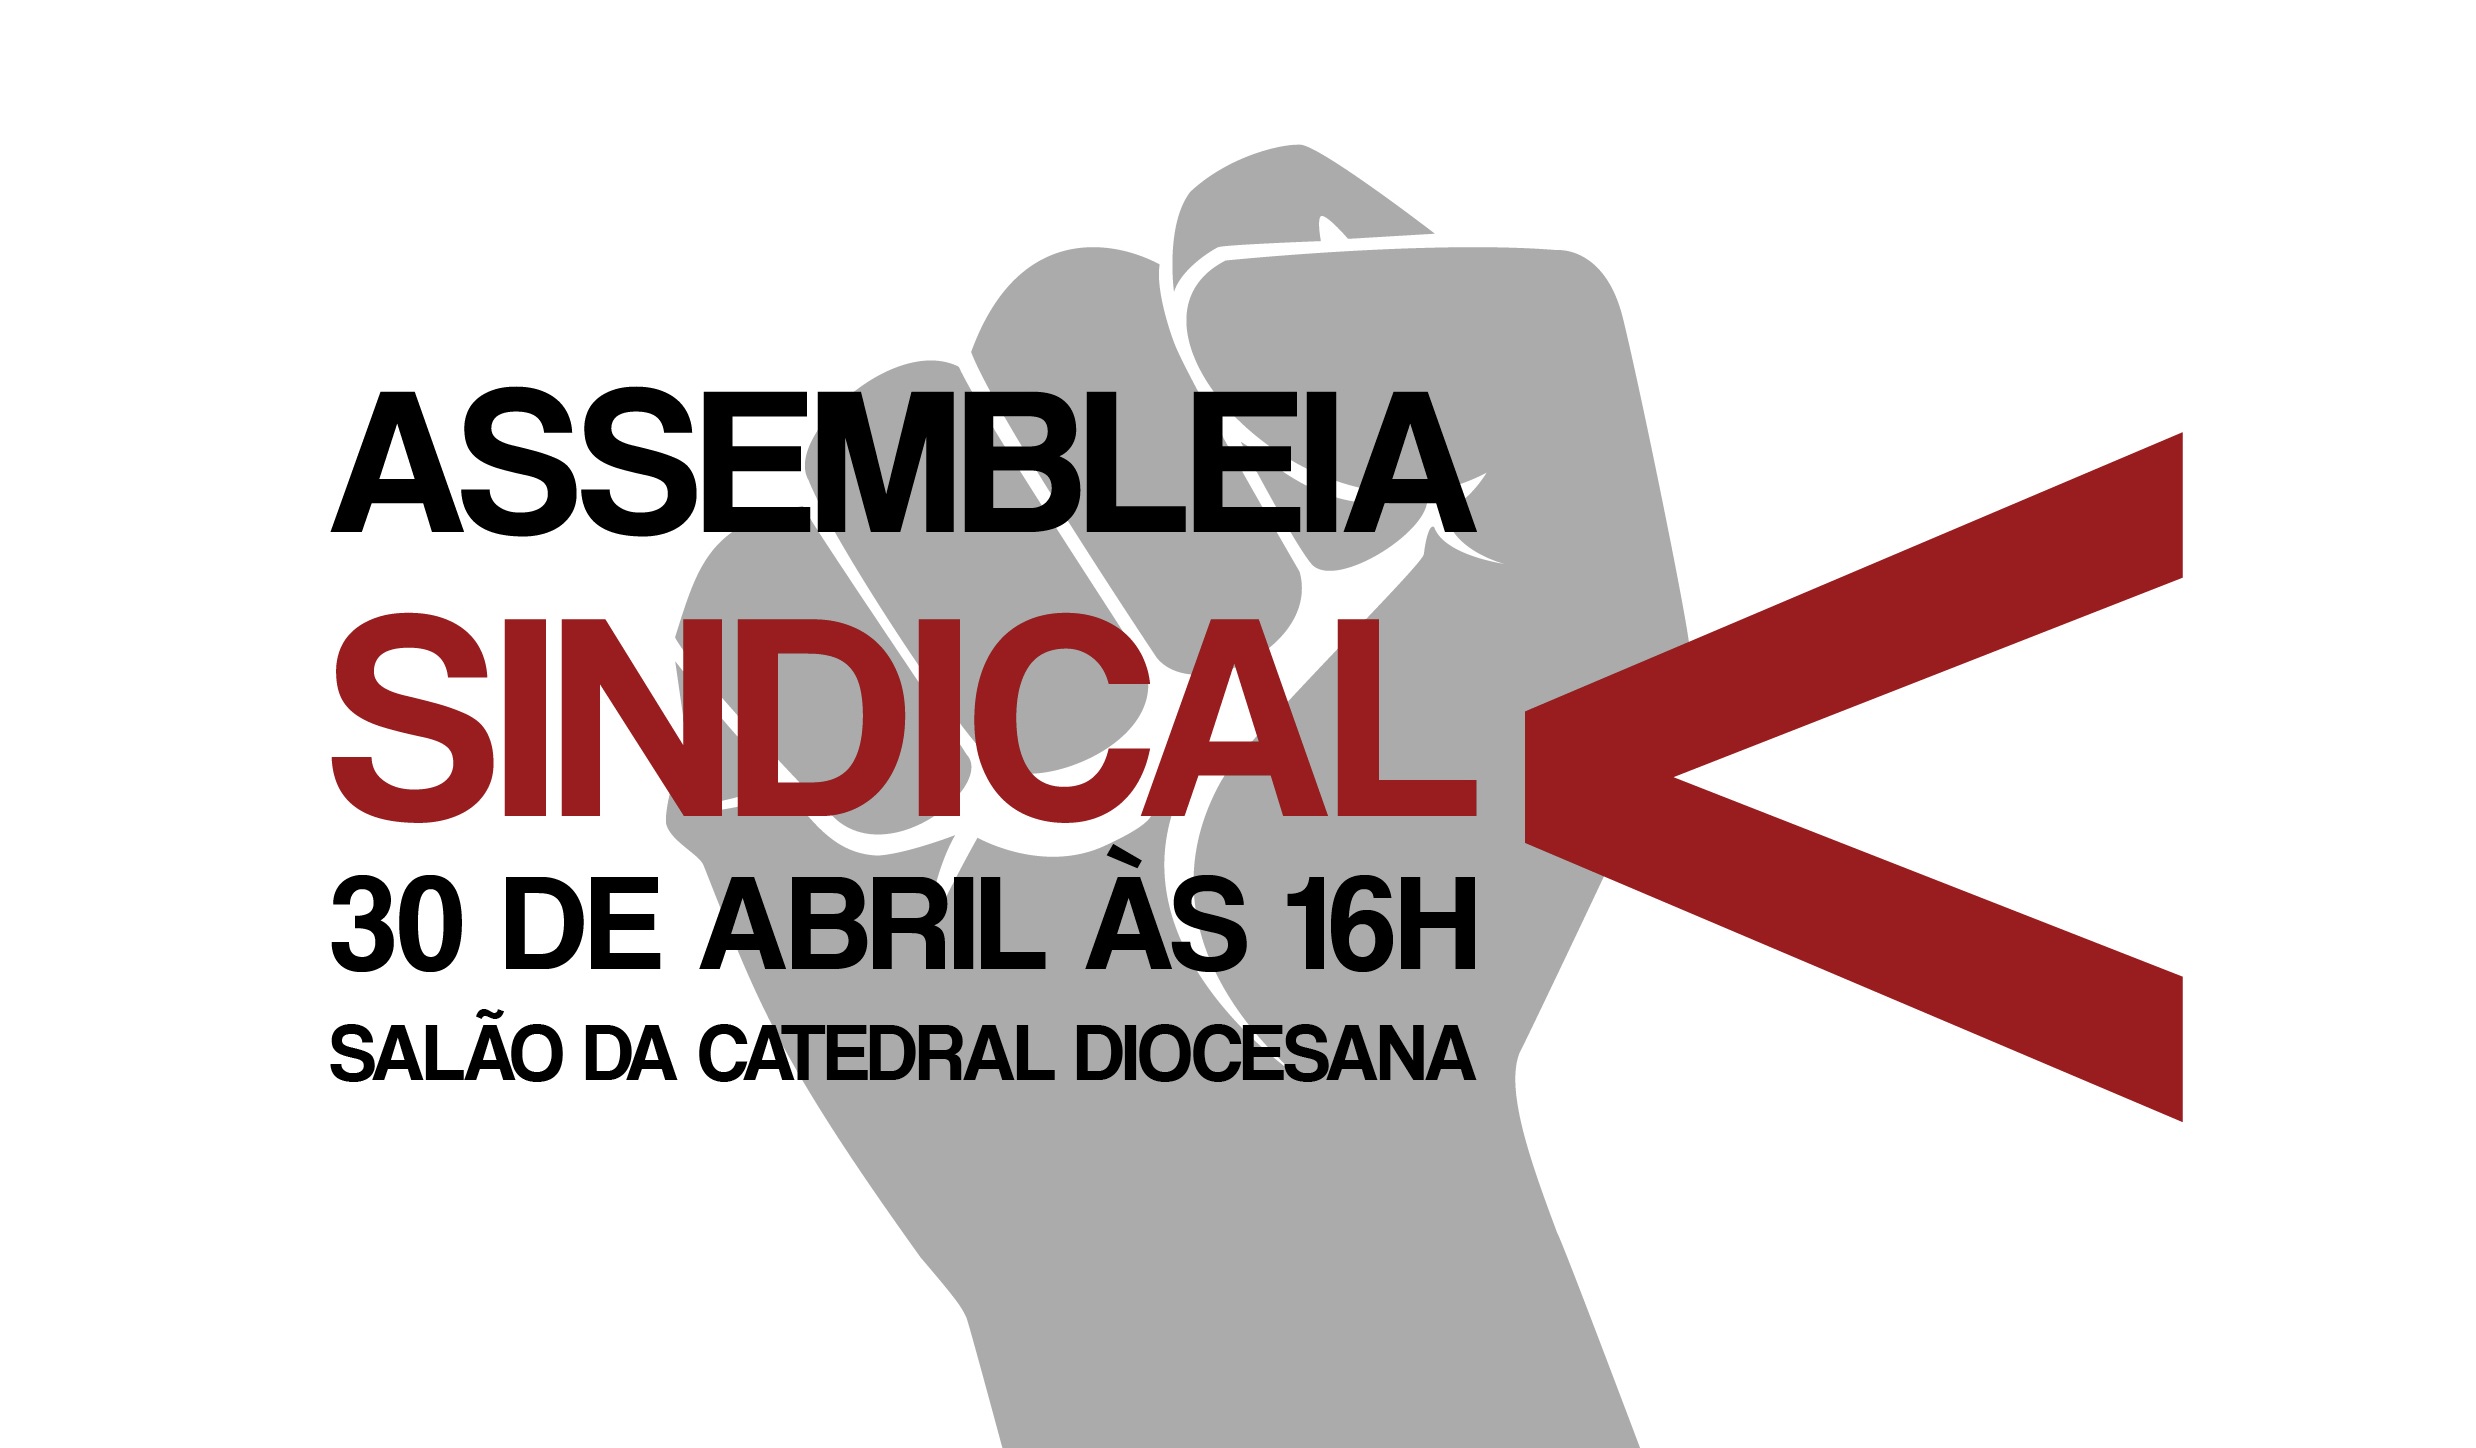 Assembleia Sindical ocorre no dia 30 de abril